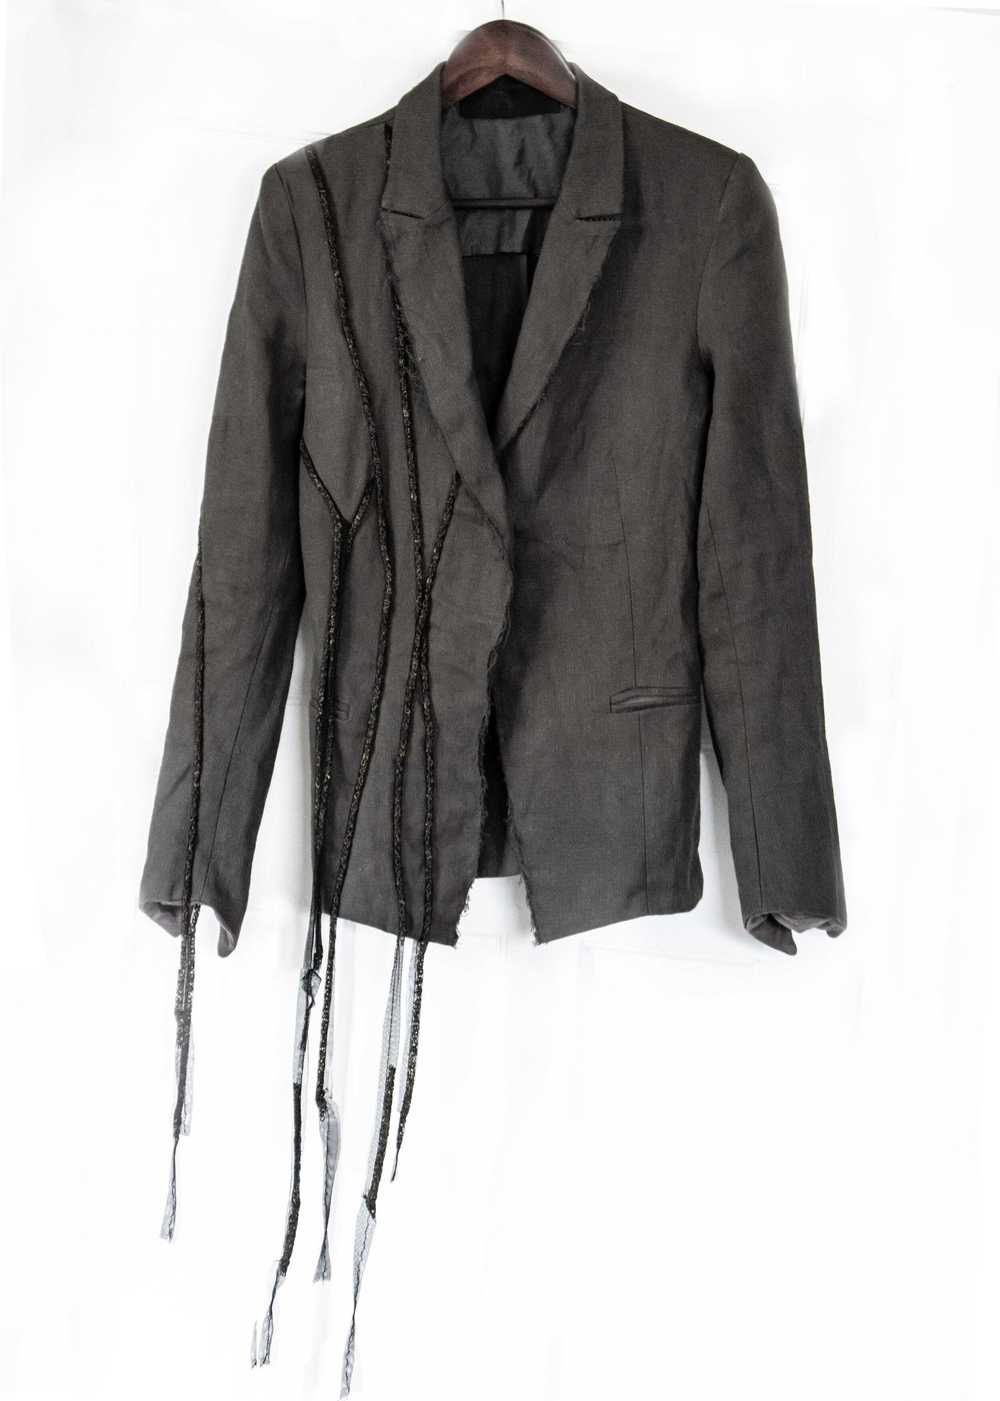 Marc Le Bihan Cotton/Linen Chain Detail Jacket - image 1